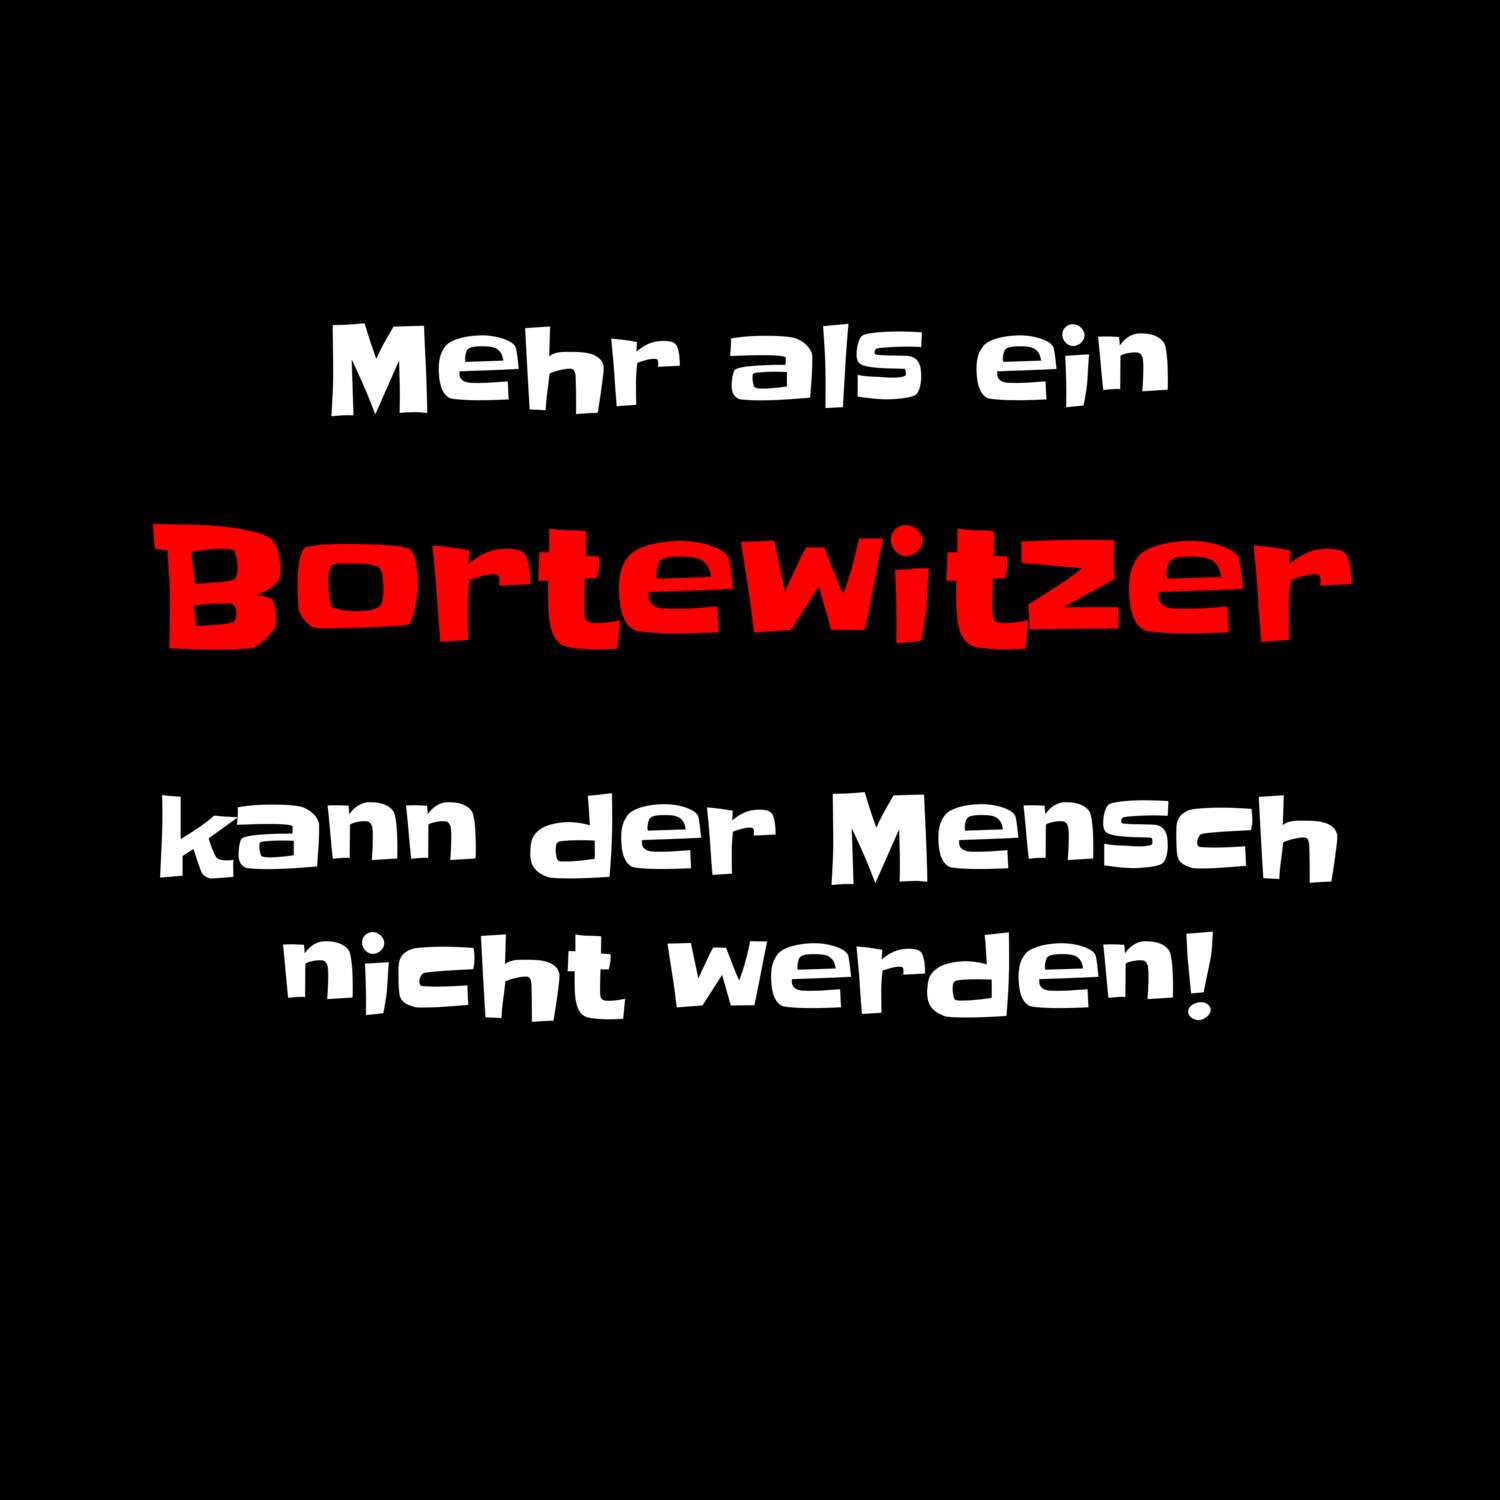 Bortewitz T-Shirt »Mehr als ein«